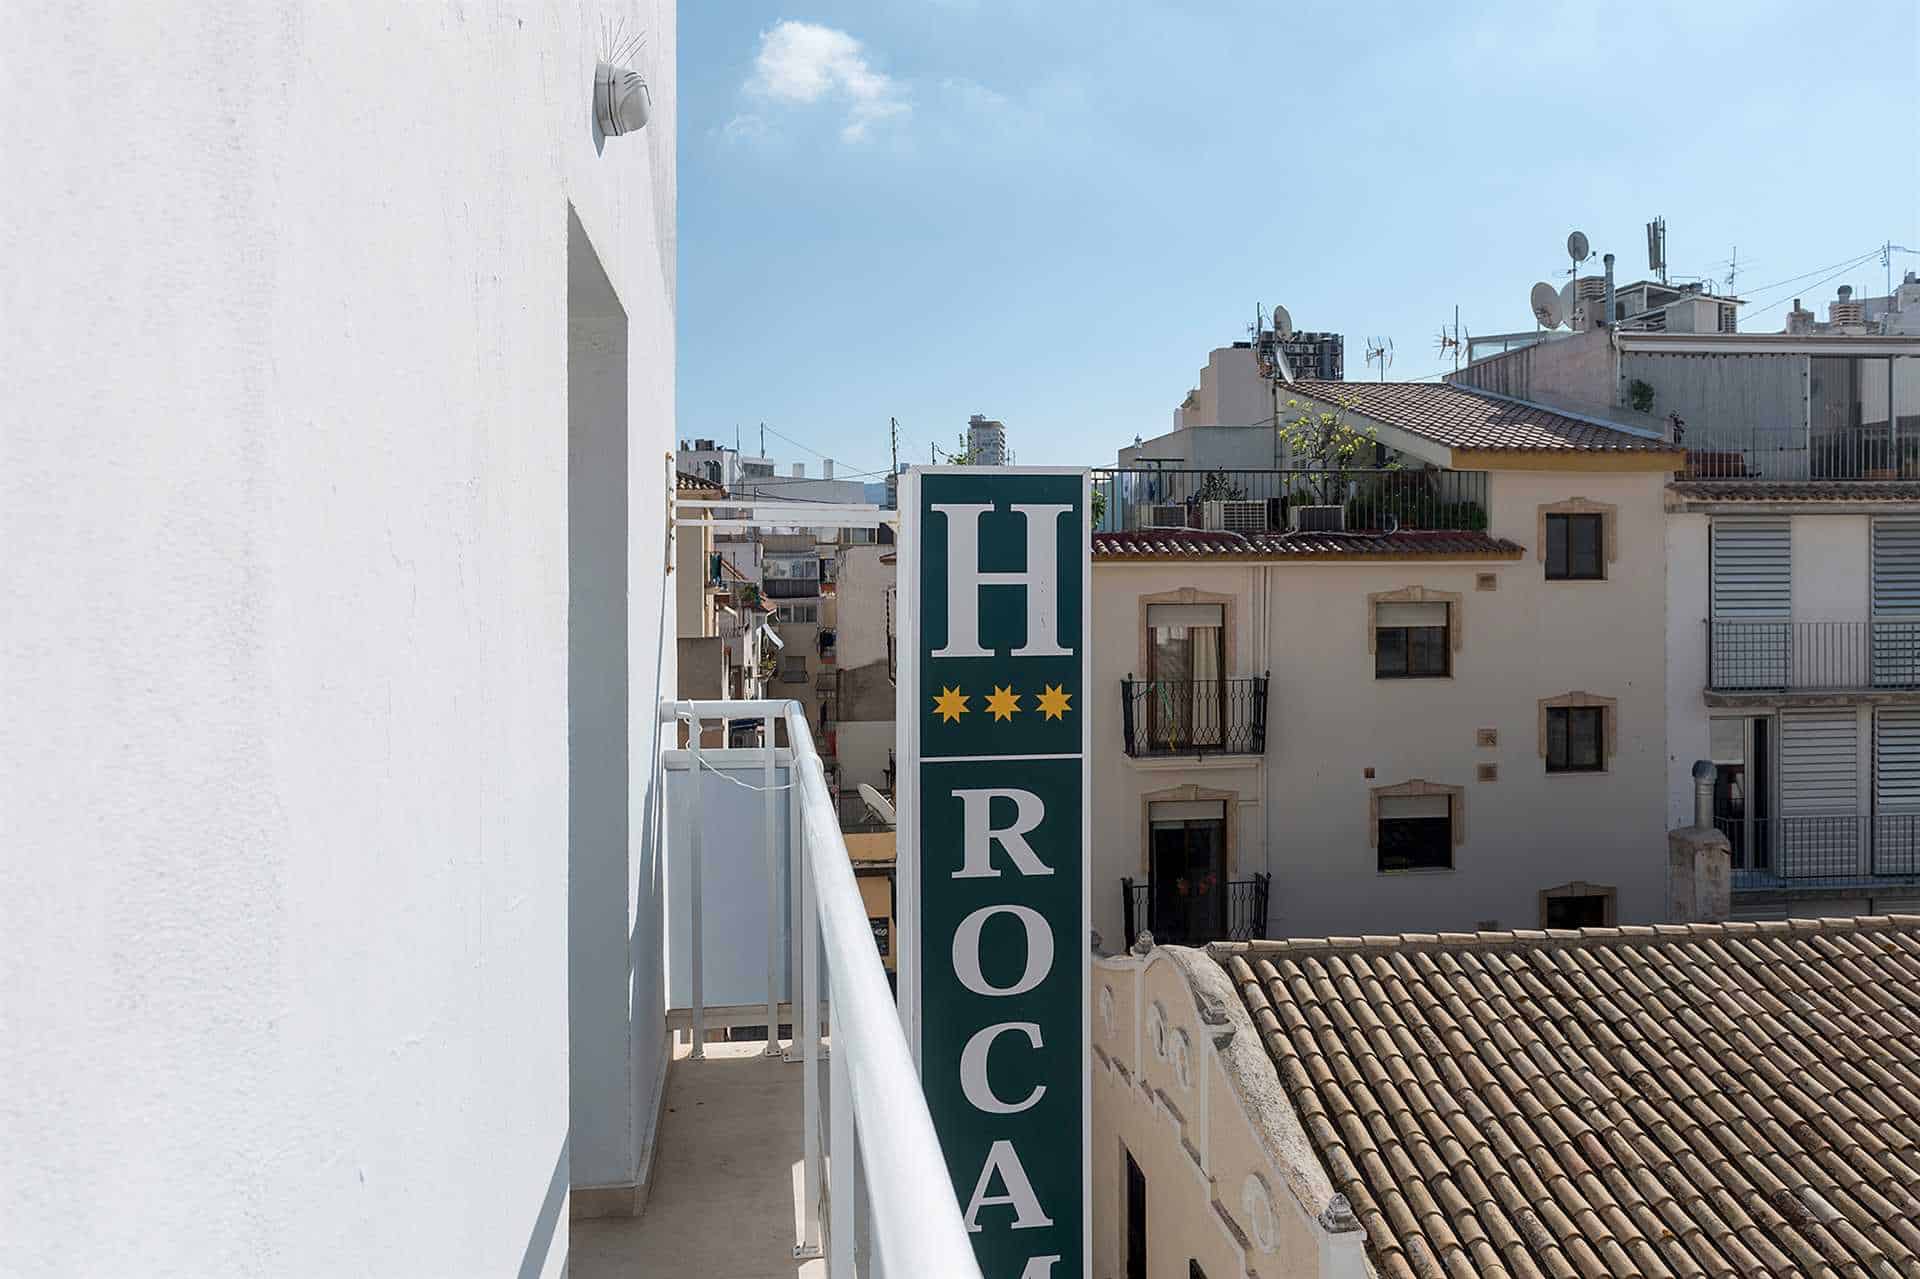 Hotell Roca-Mar Benidorm